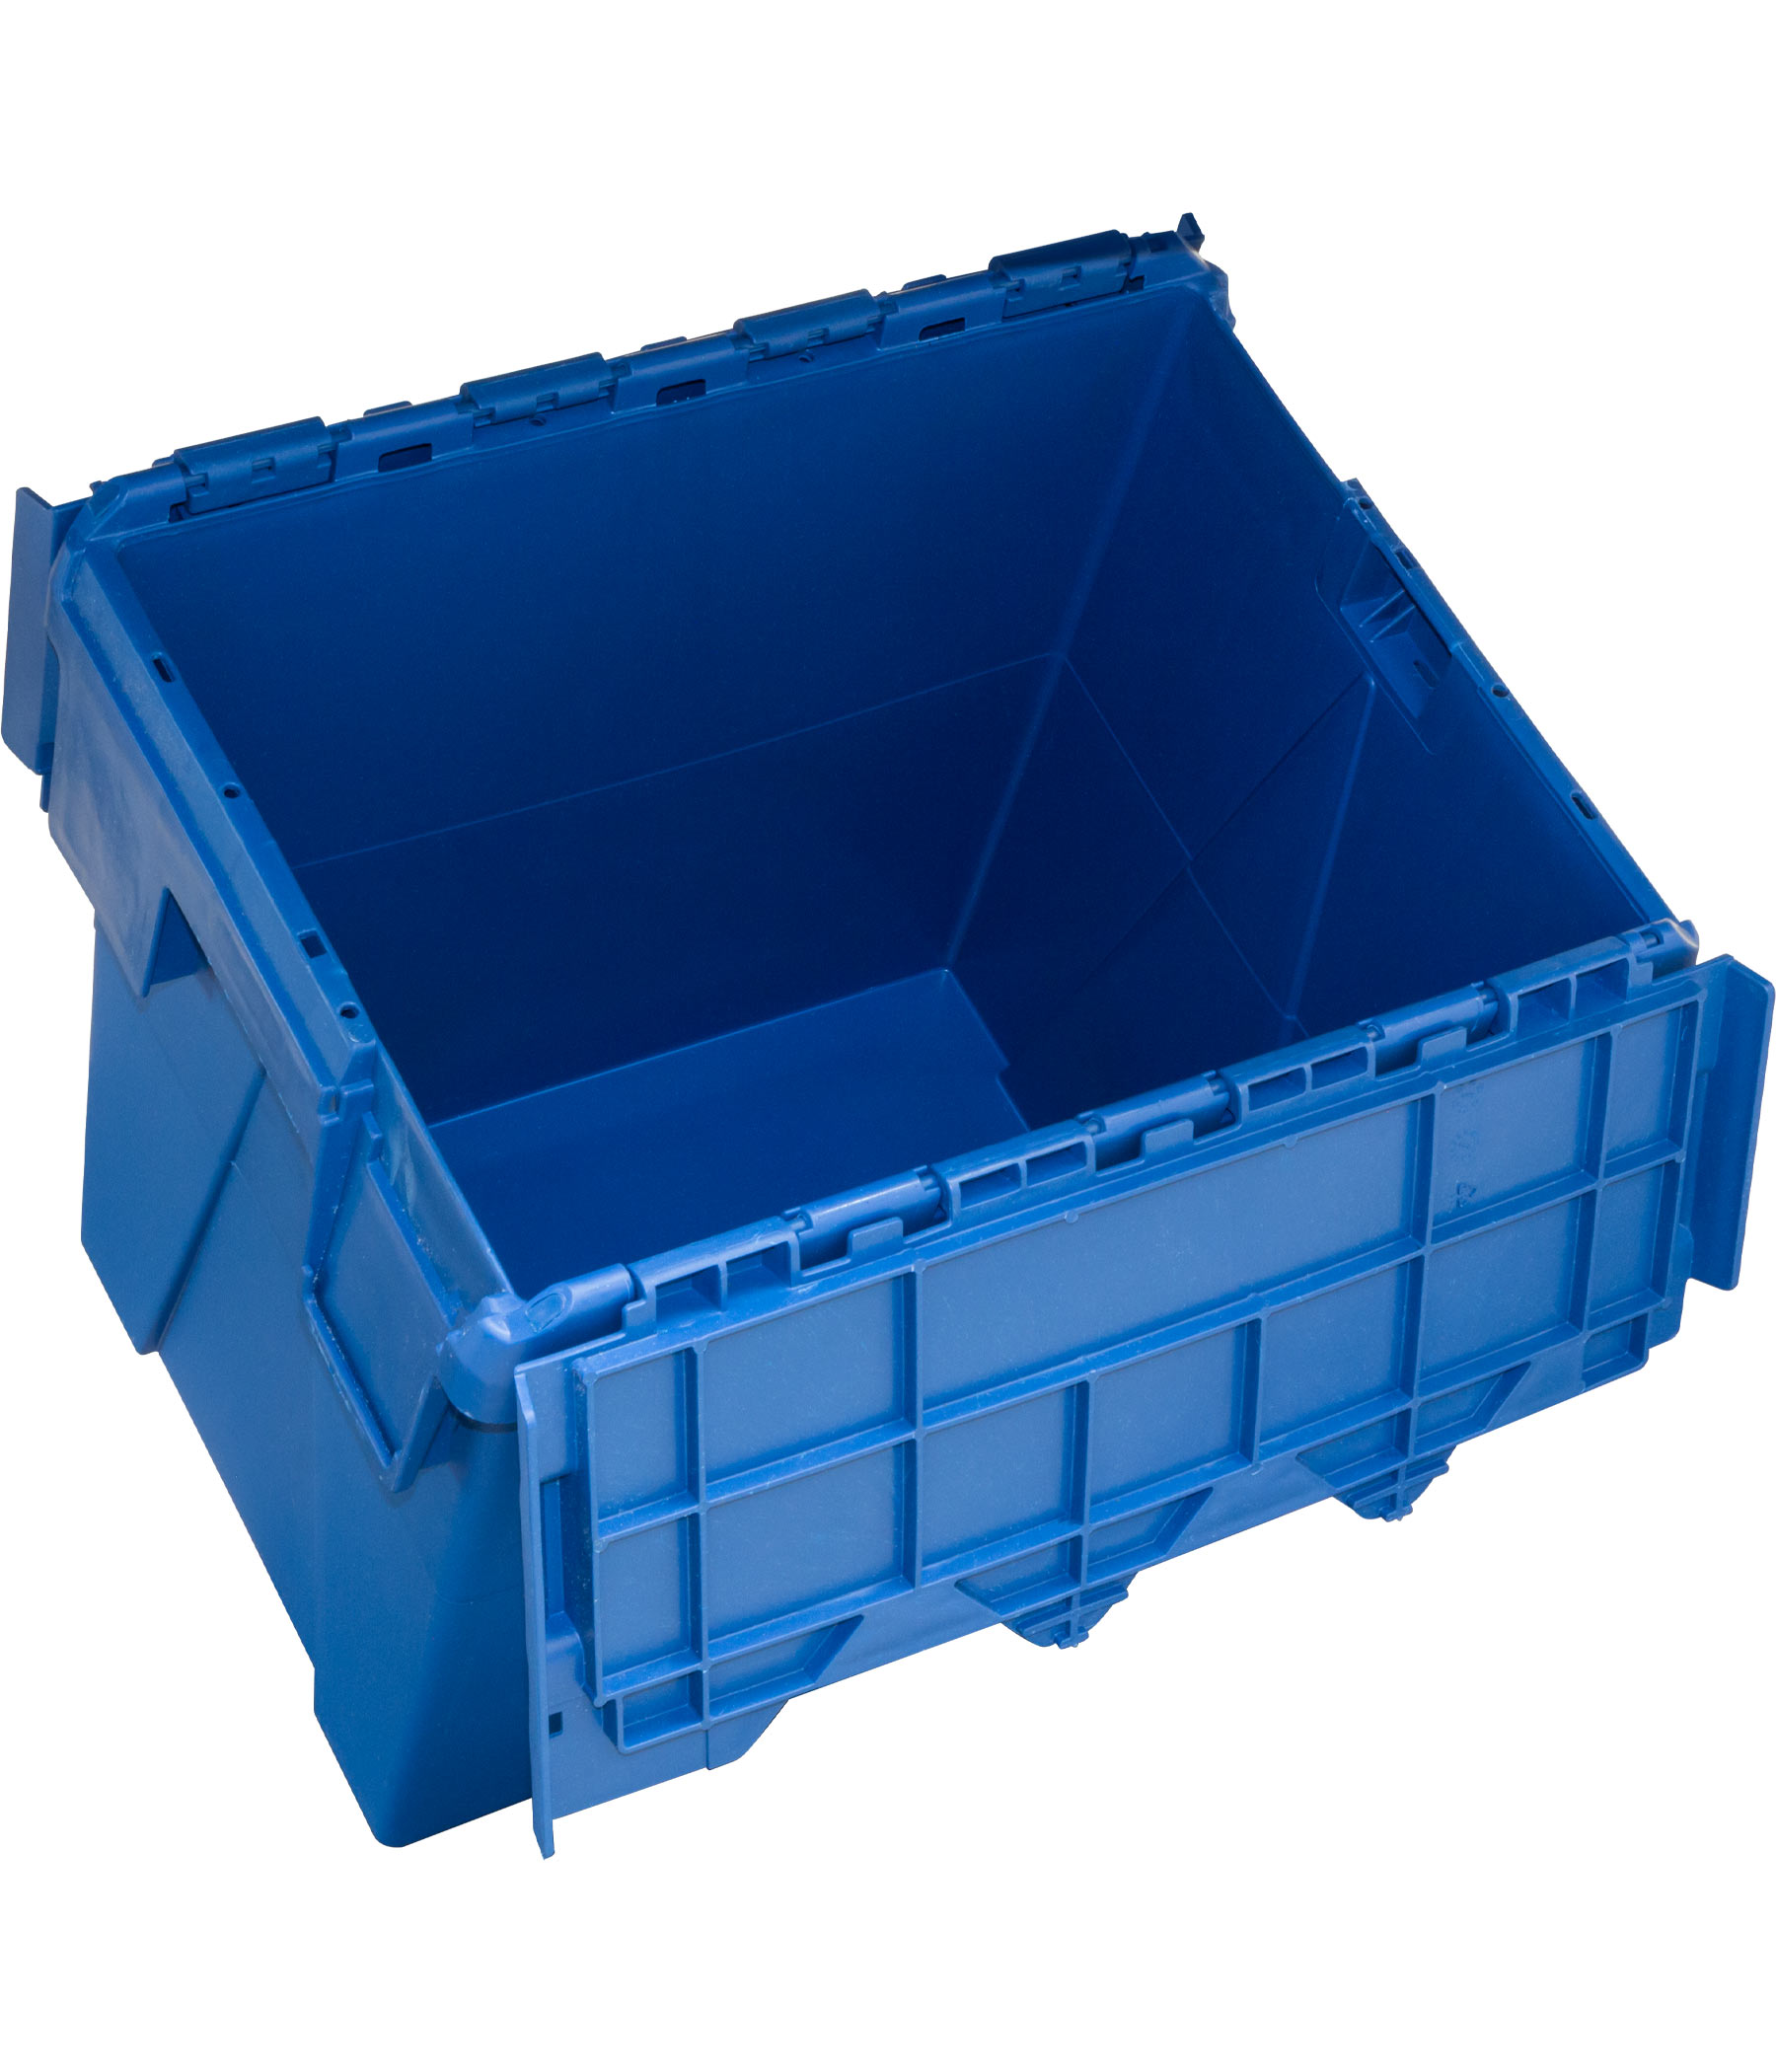 Пластиковий контейнер з кришкою SPKM 4332